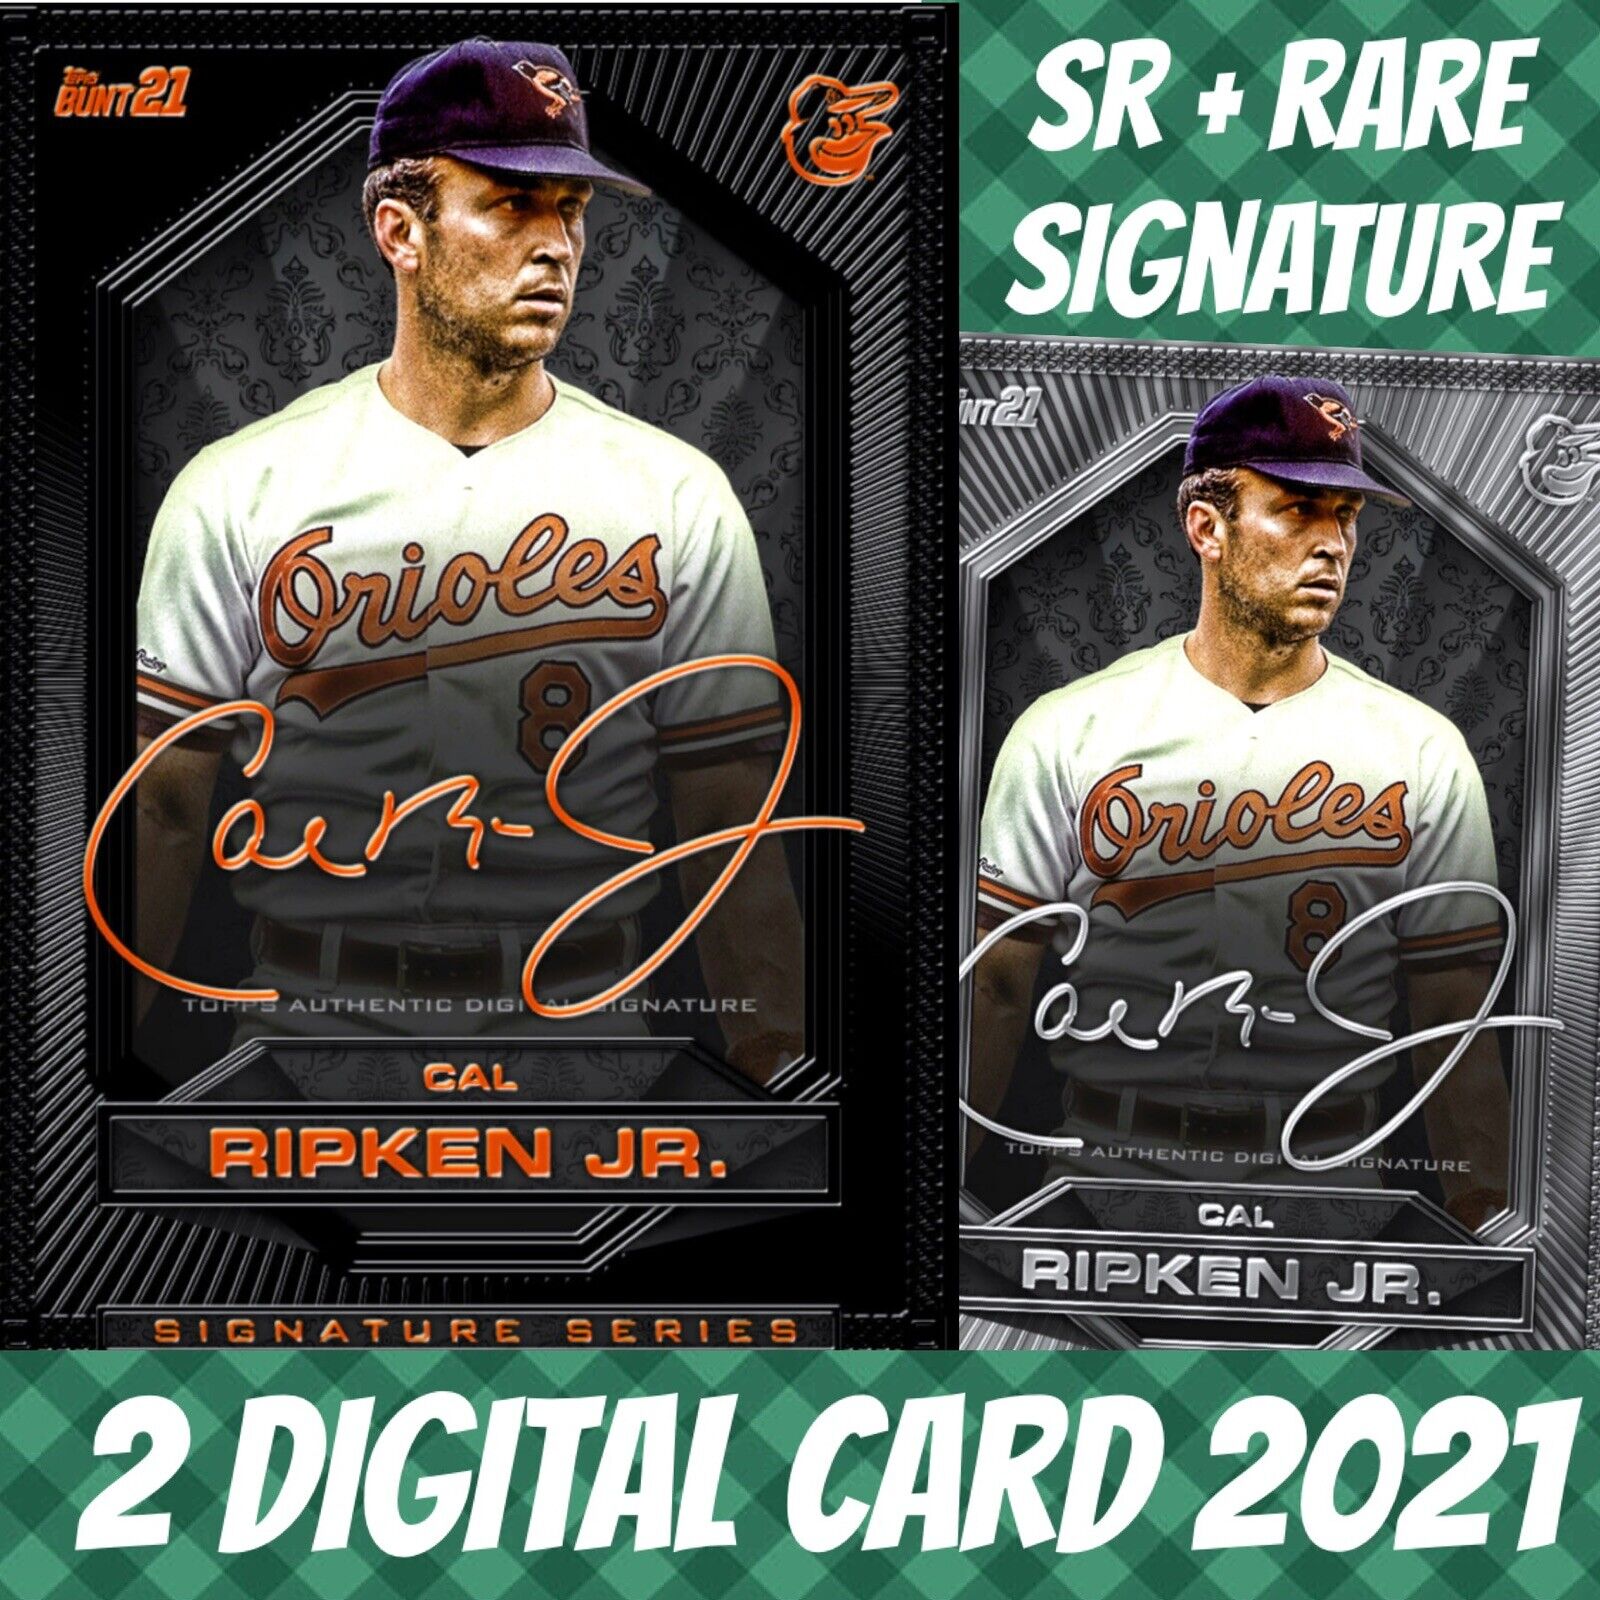 Topps Bunt 21 Cal Ripken Jr. SR + Rare 2021 Signature Series Digital Card